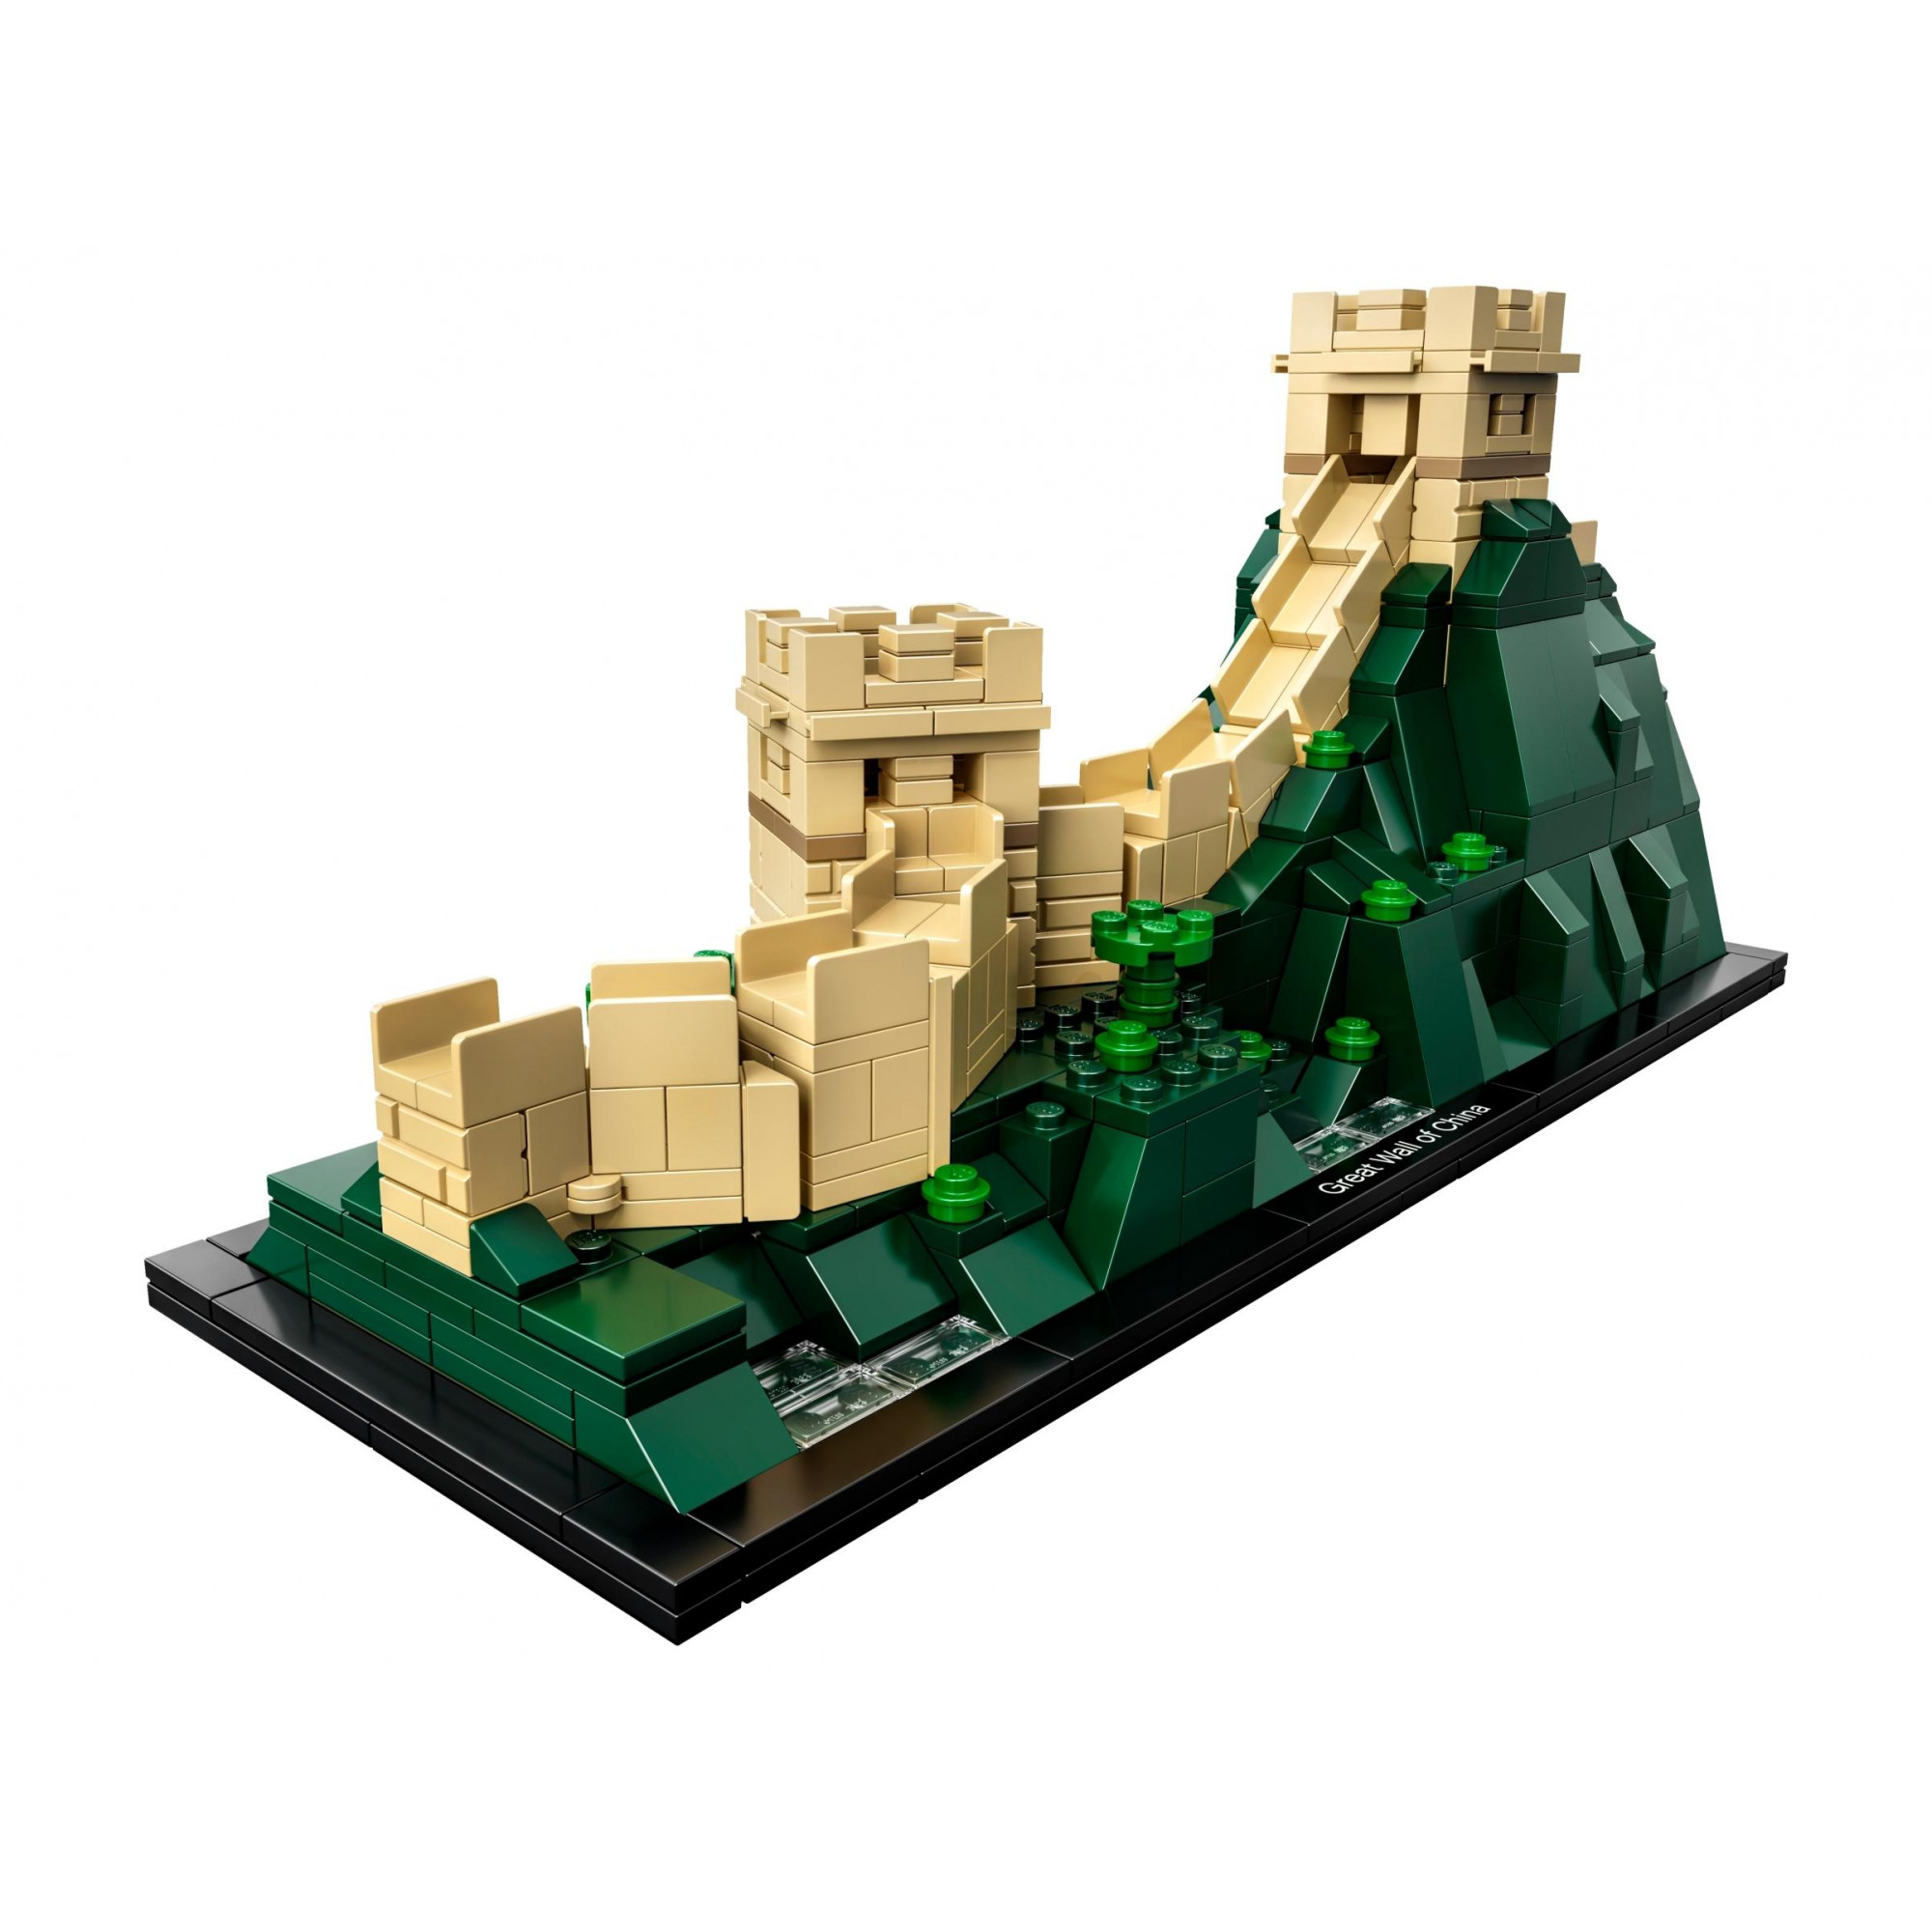 LEGO Architecture Великая китайская стена (21041) - зображення 1